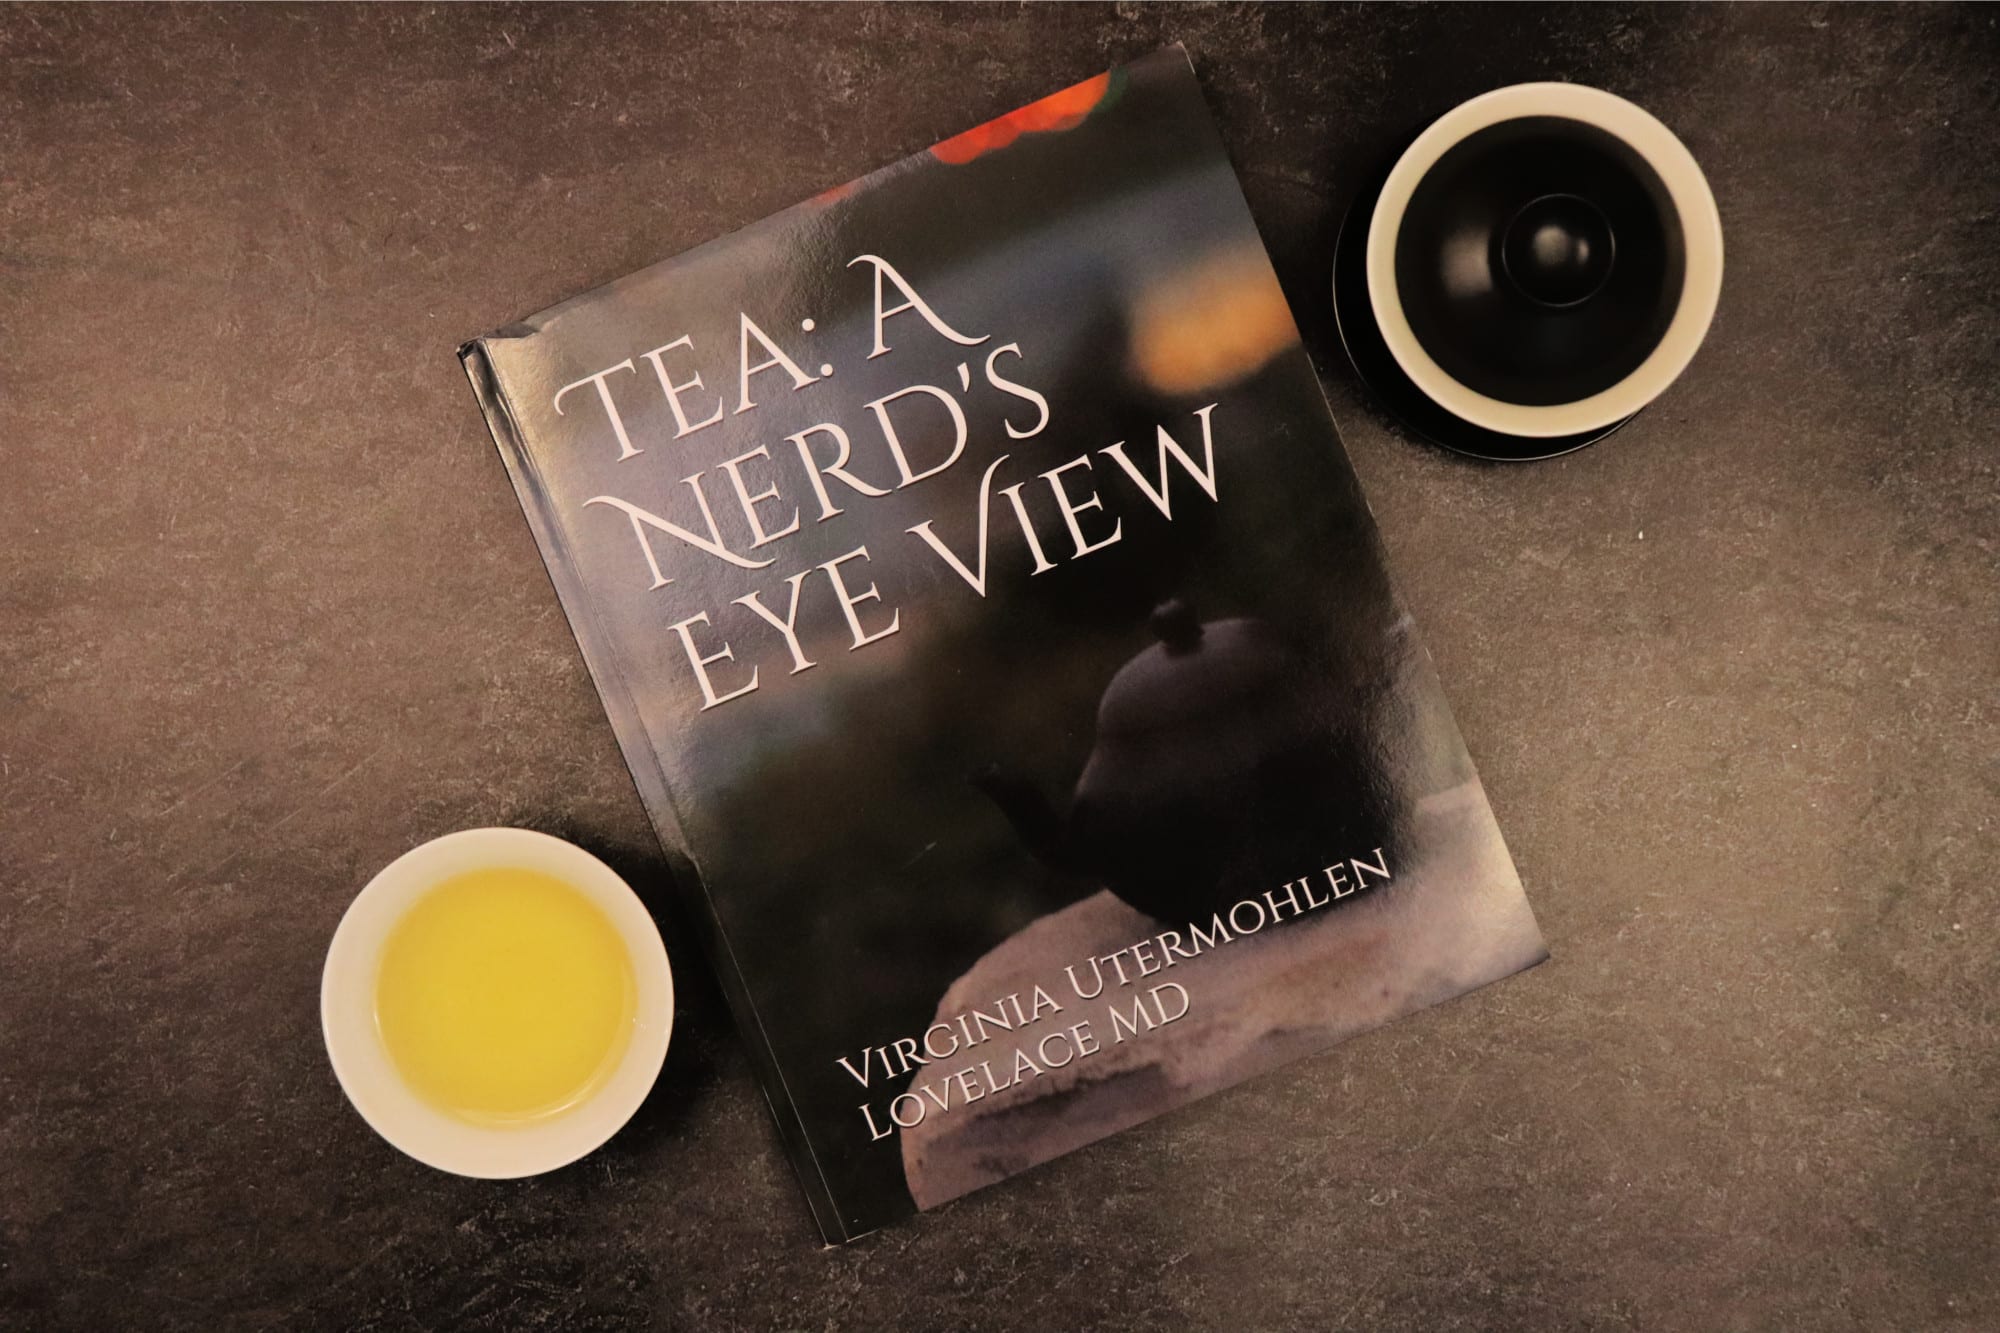 Tea: A Nerd’s Eye View by Virginia Utermohlen Lovelace MD